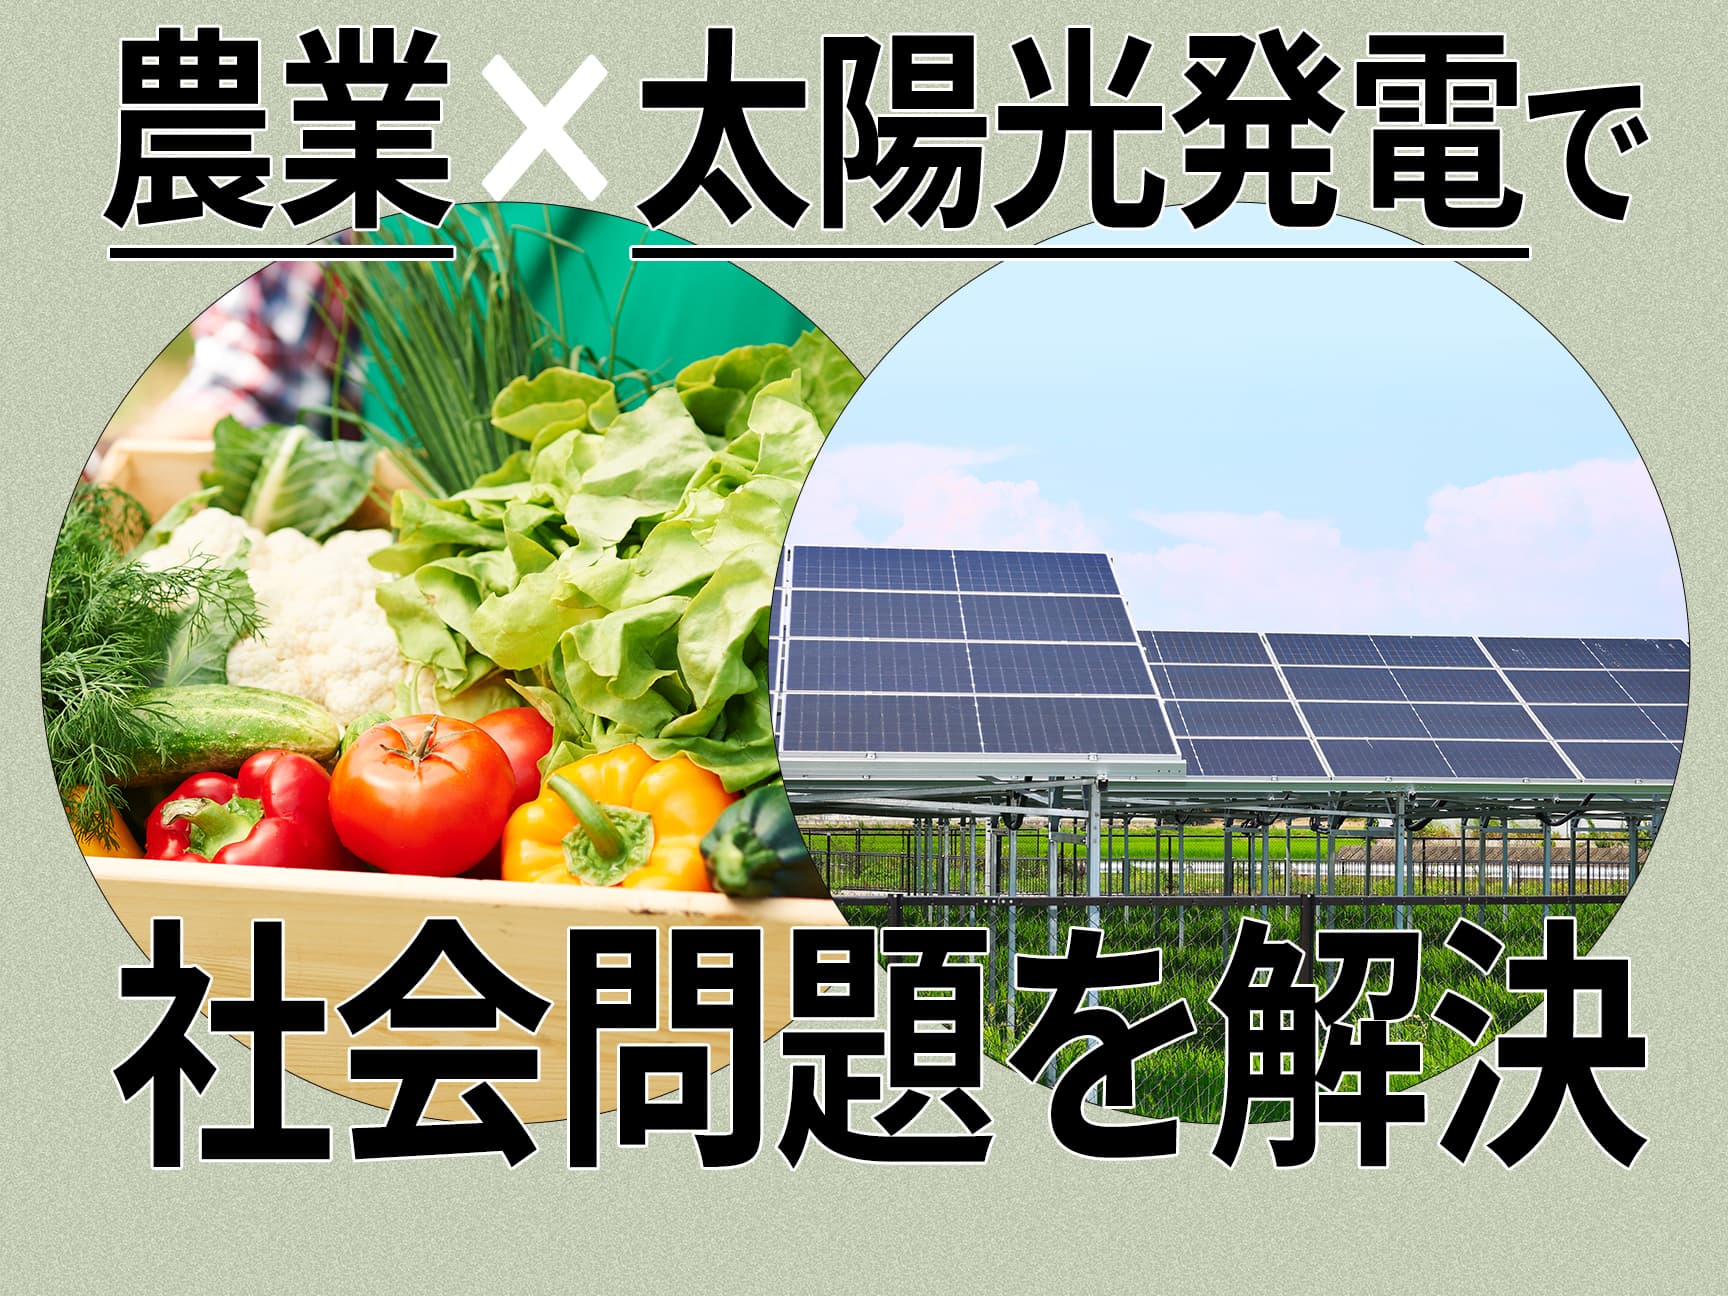 埼玉県東松山市の「ソーラーシェア」が農業の未来を明るく照らす